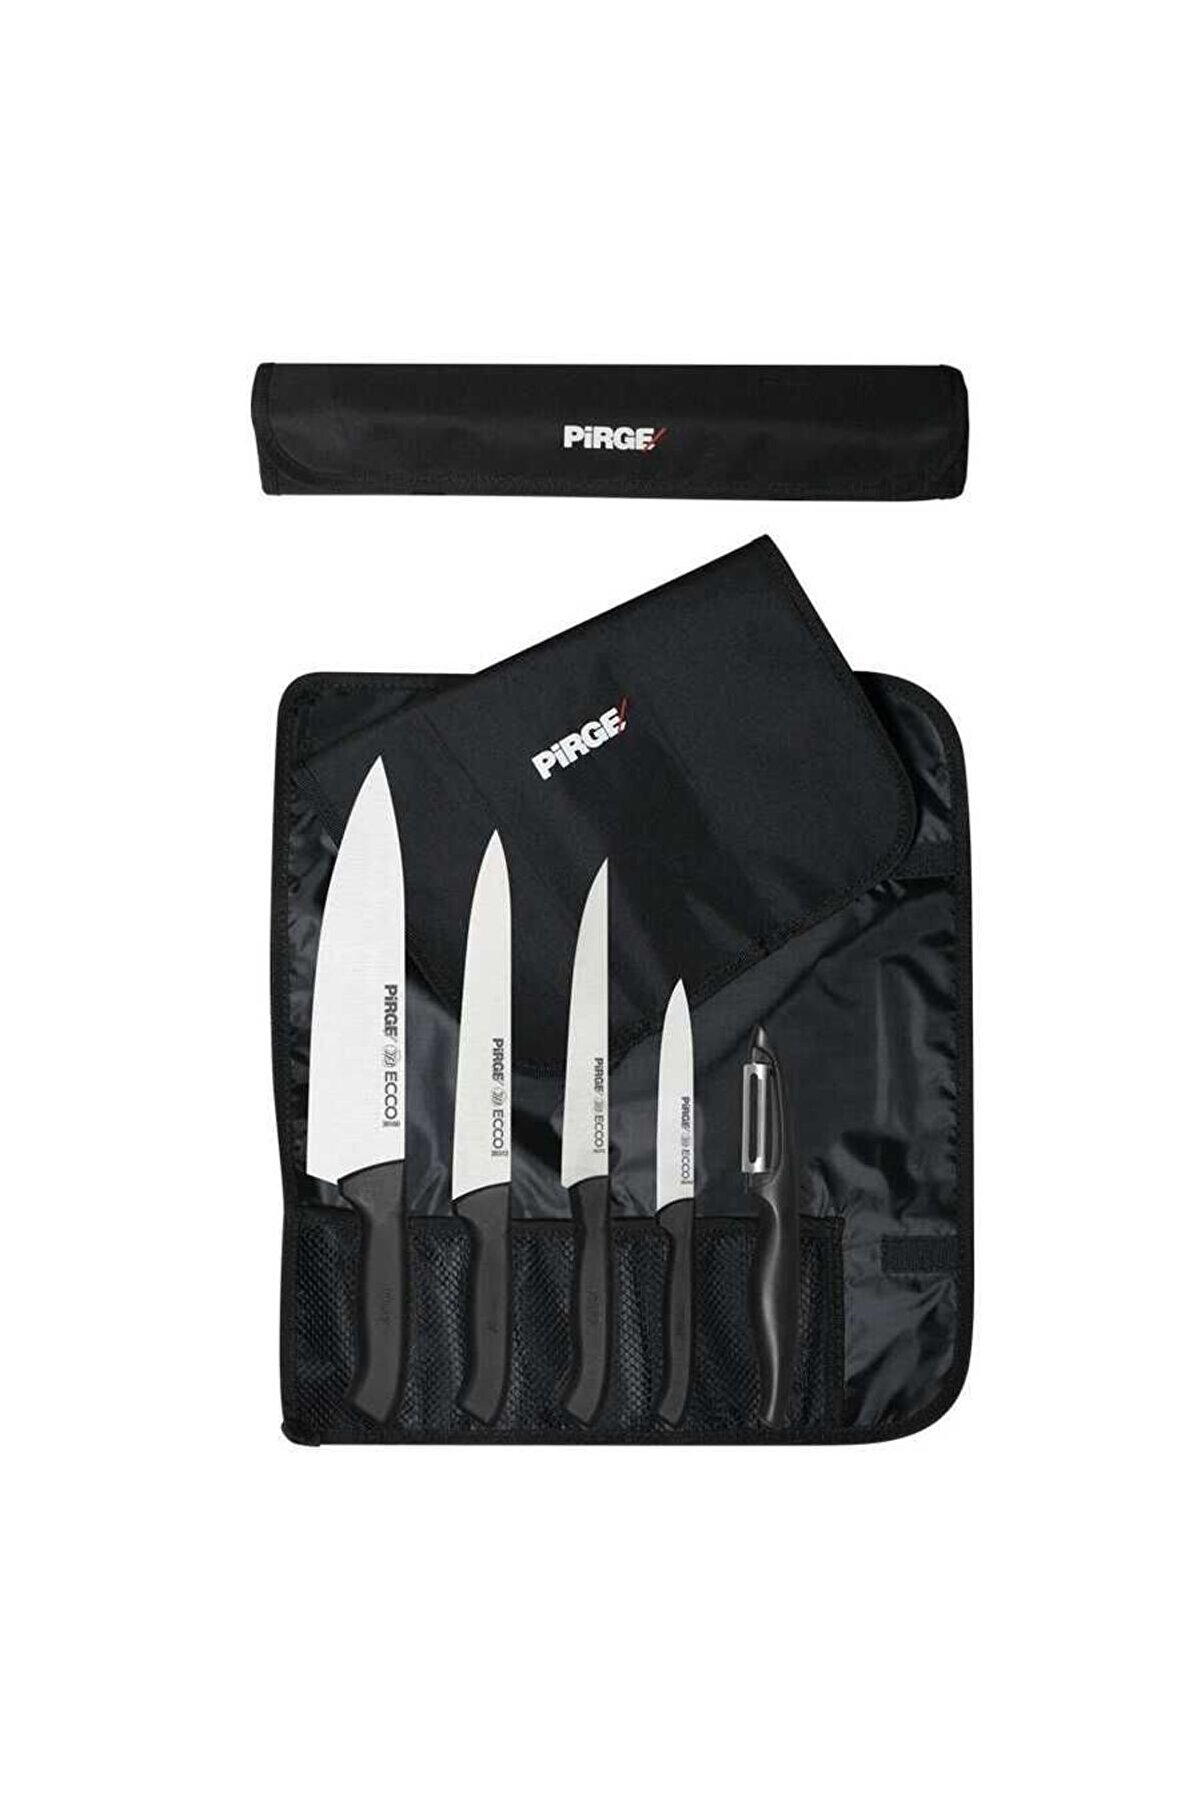 Pirge Pirge Ecco Çantalı Bıçak Seti 38402